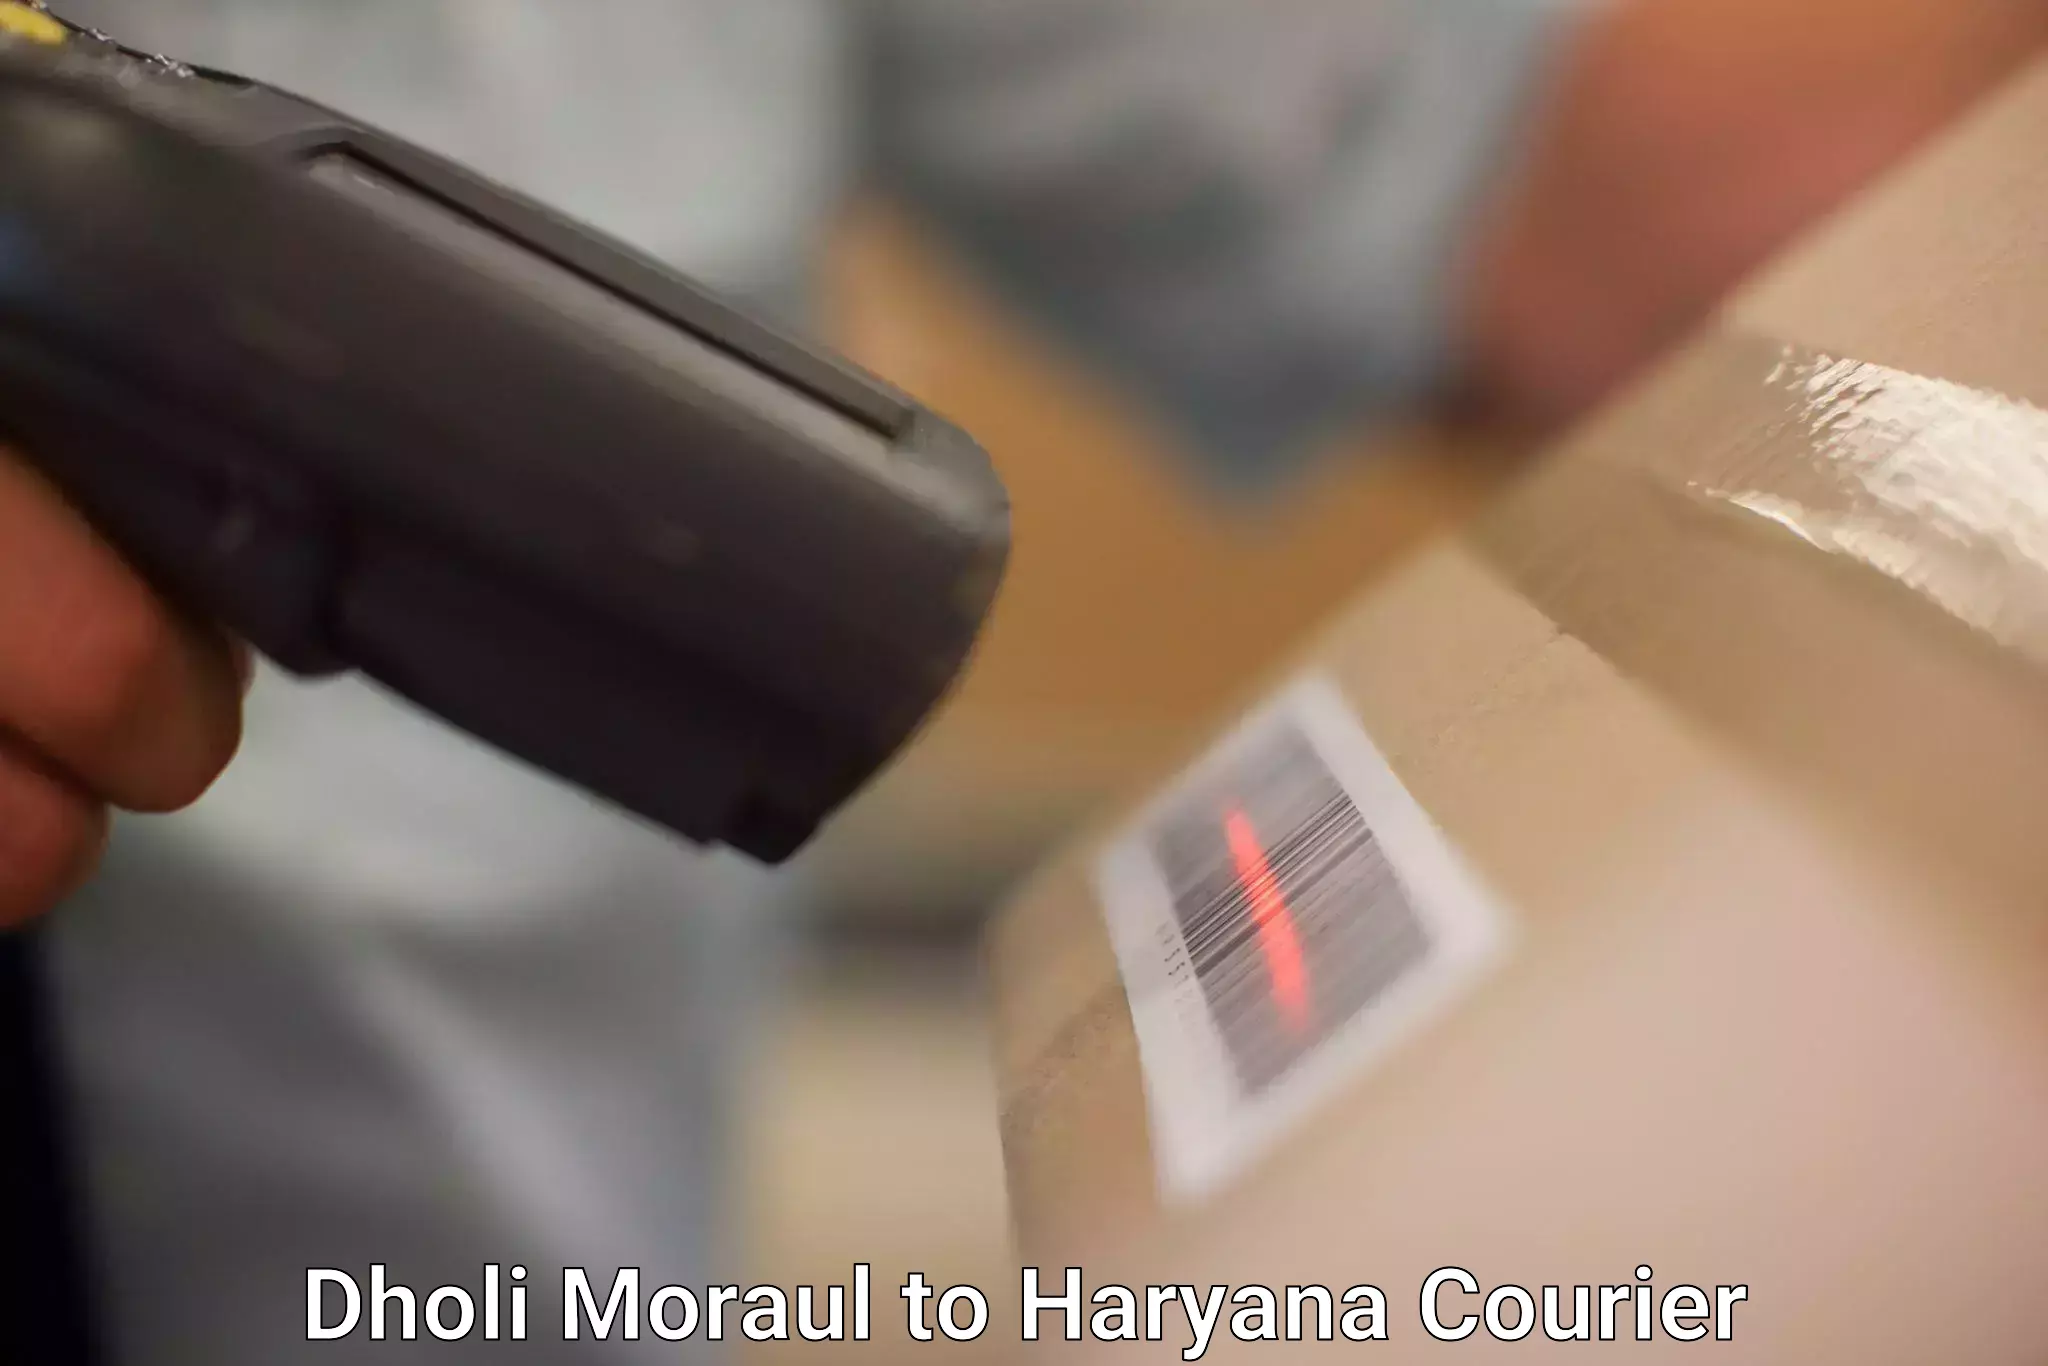 Efficient parcel transport Dholi Moraul to Karnal